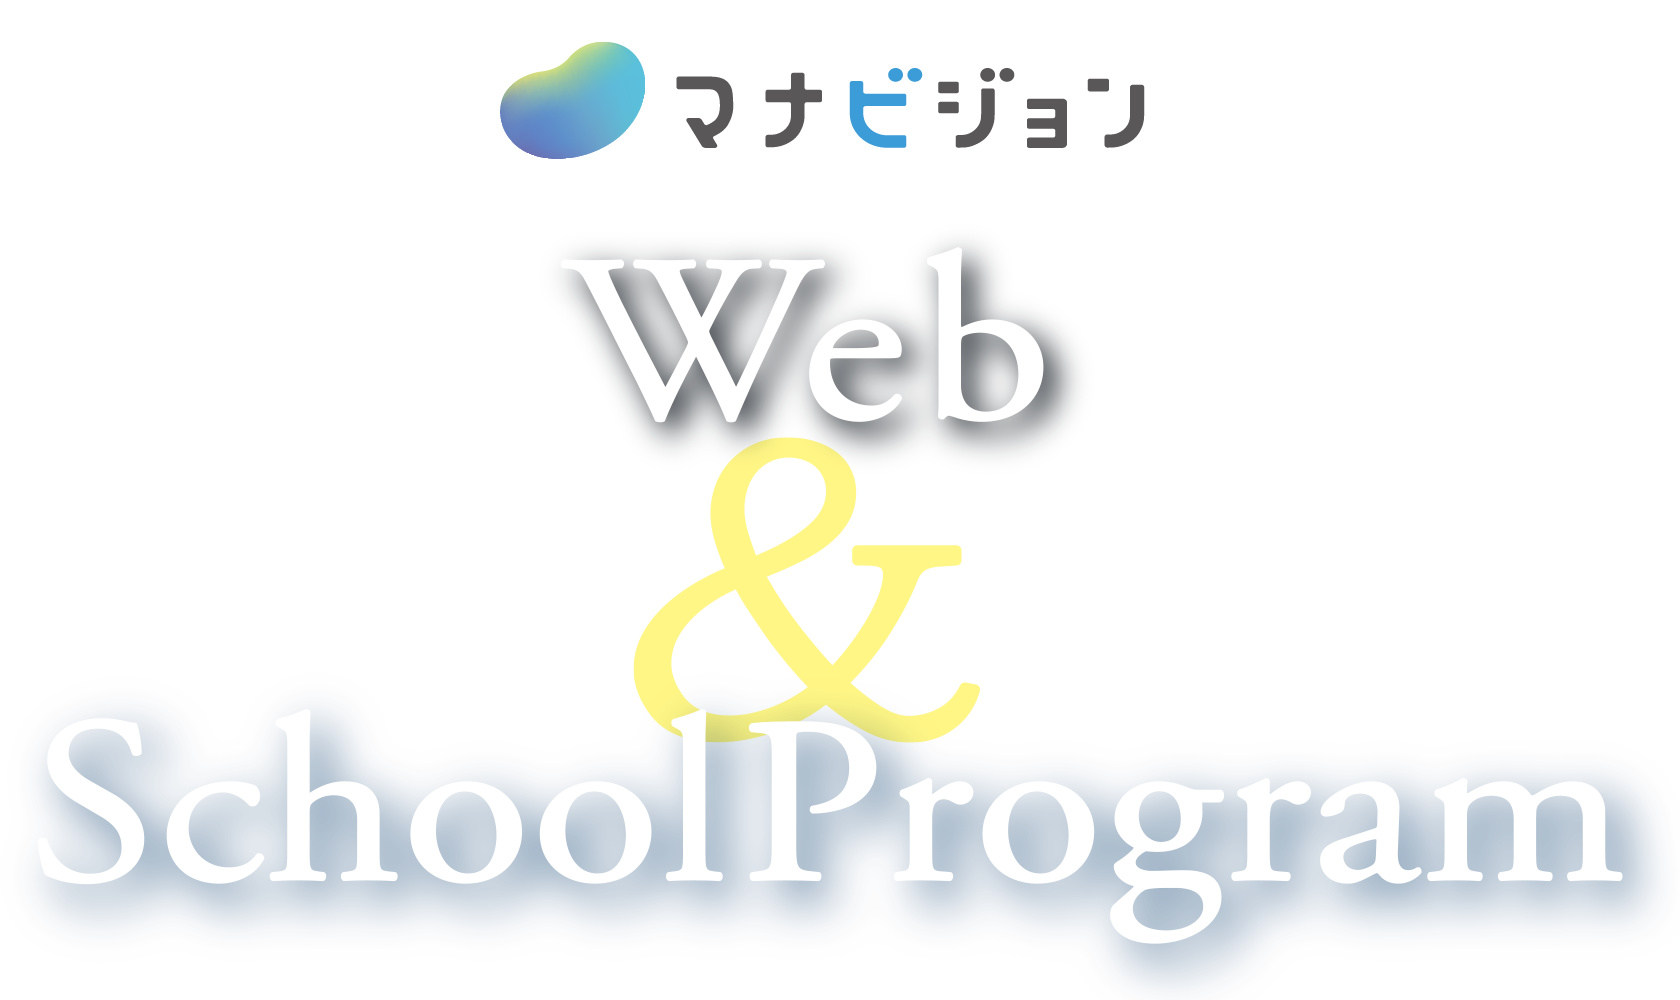 マナビジョン Web & School Program